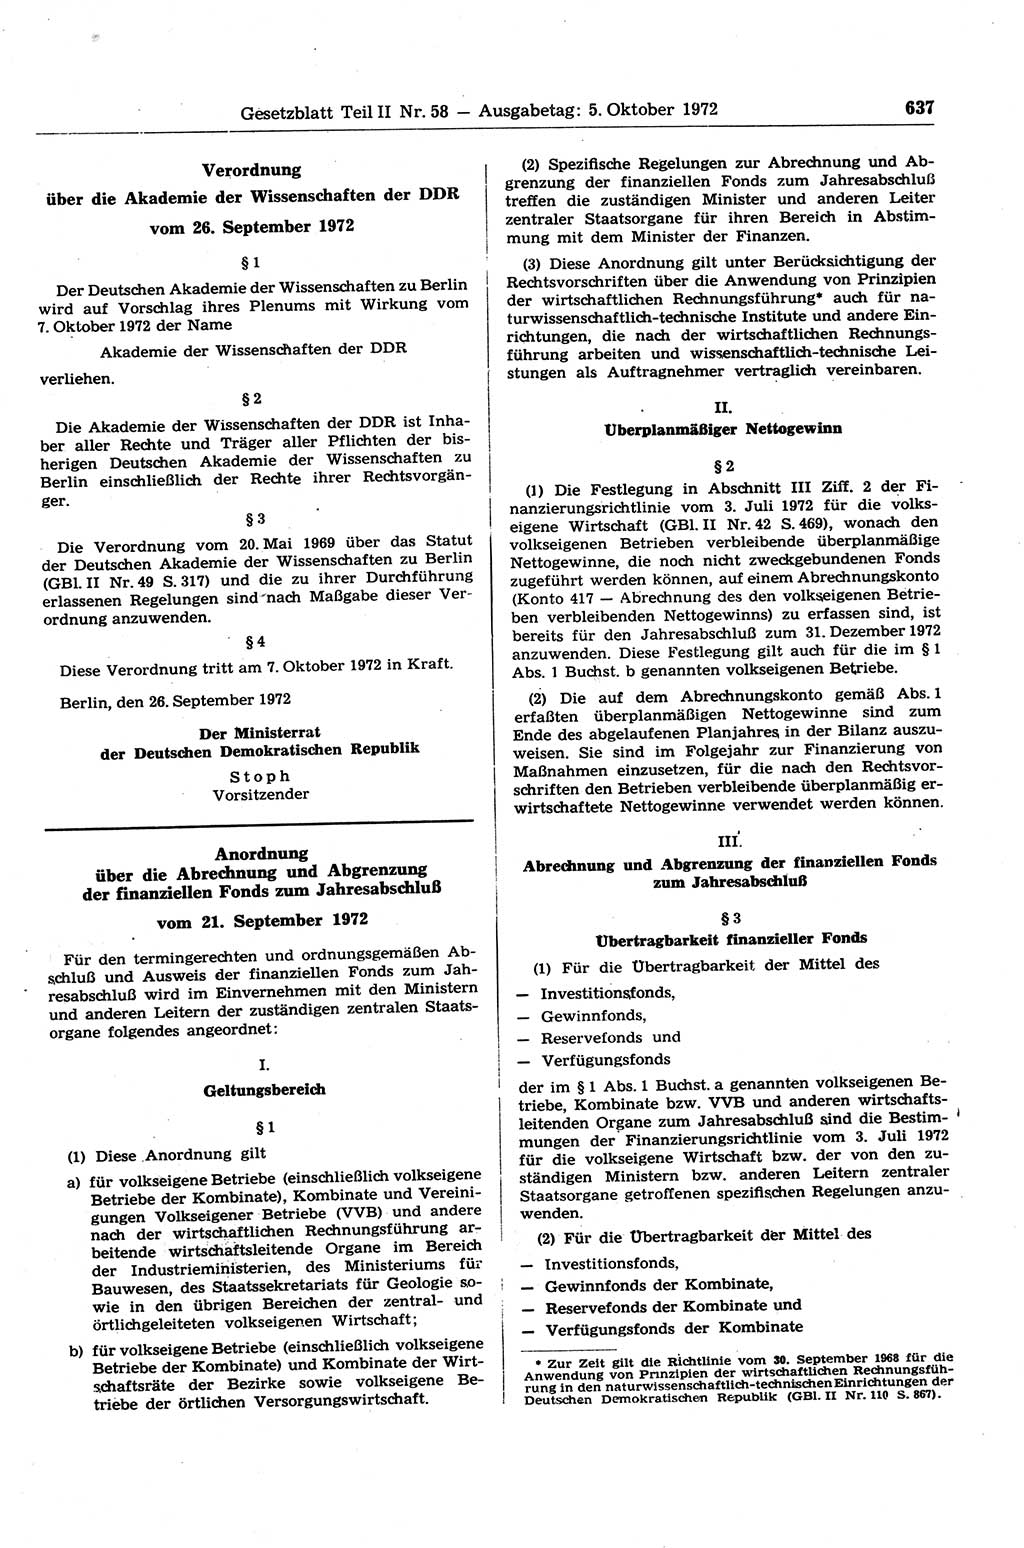 Gesetzblatt (GBl.) der Deutschen Demokratischen Republik (DDR) Teil ⅠⅠ 1972, Seite 637 (GBl. DDR ⅠⅠ 1972, S. 637)